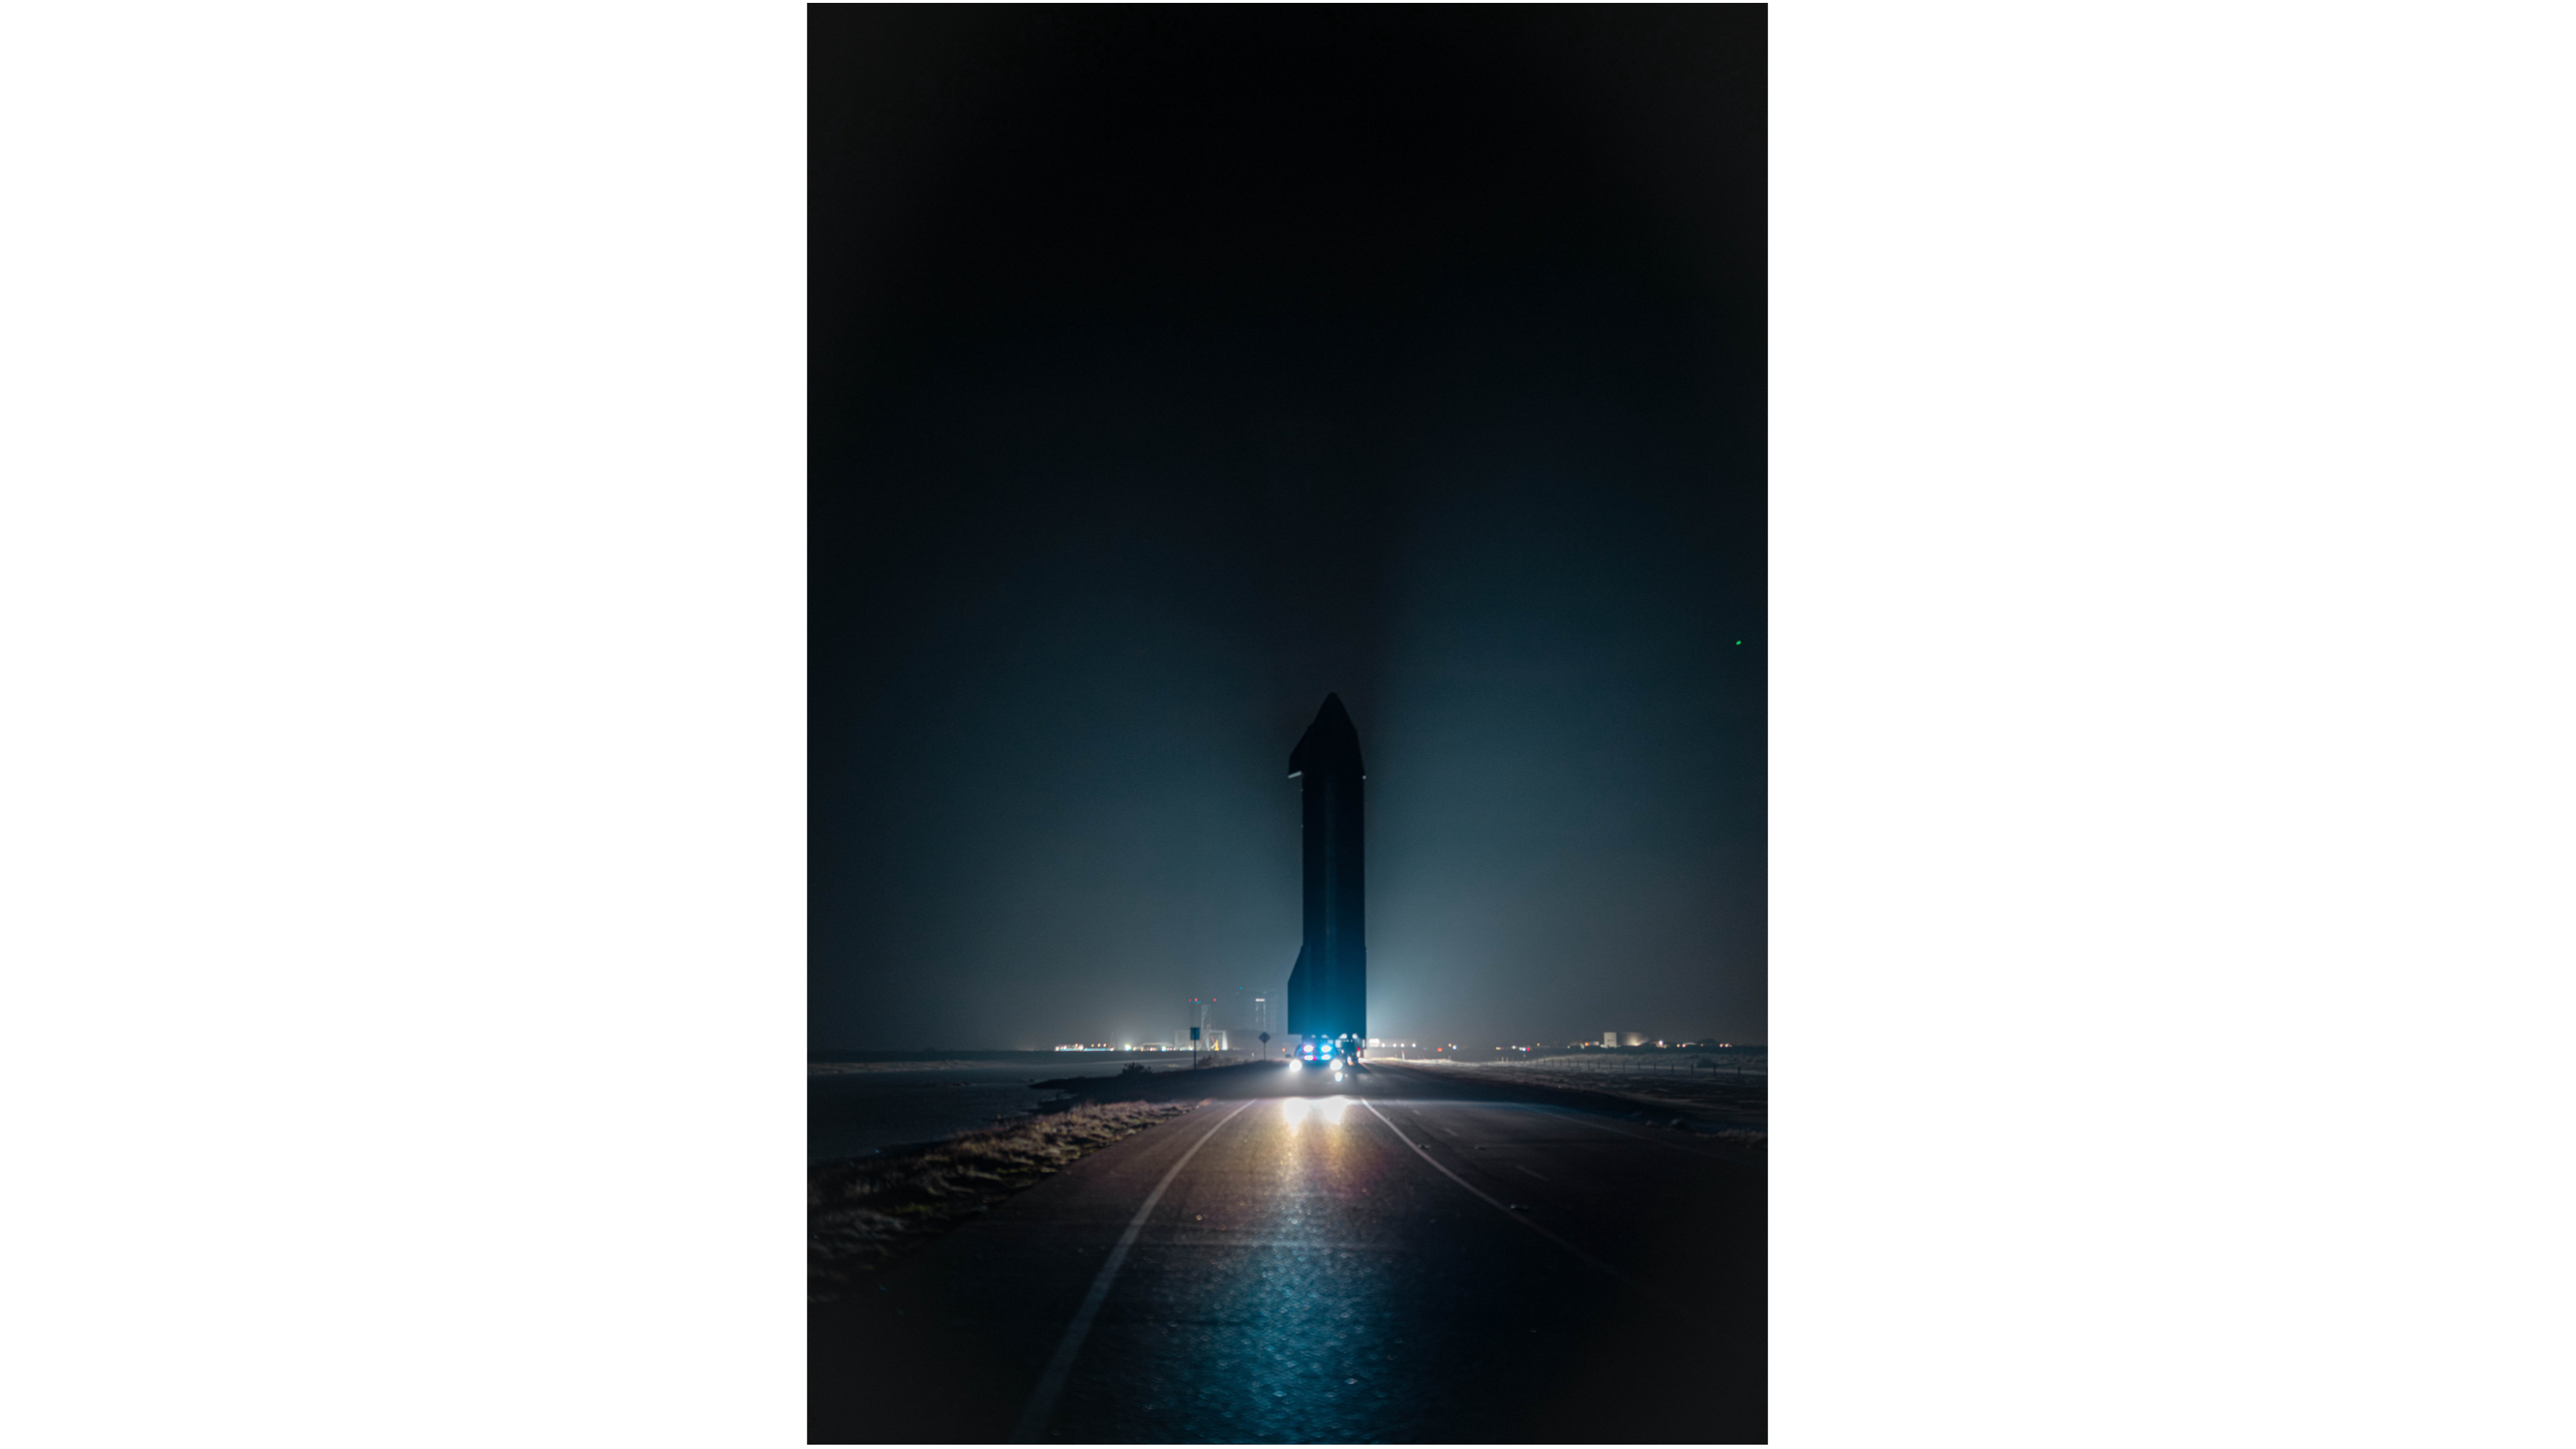 una gran nave espacial avanza por una carretera de noche, con luces de fondo.